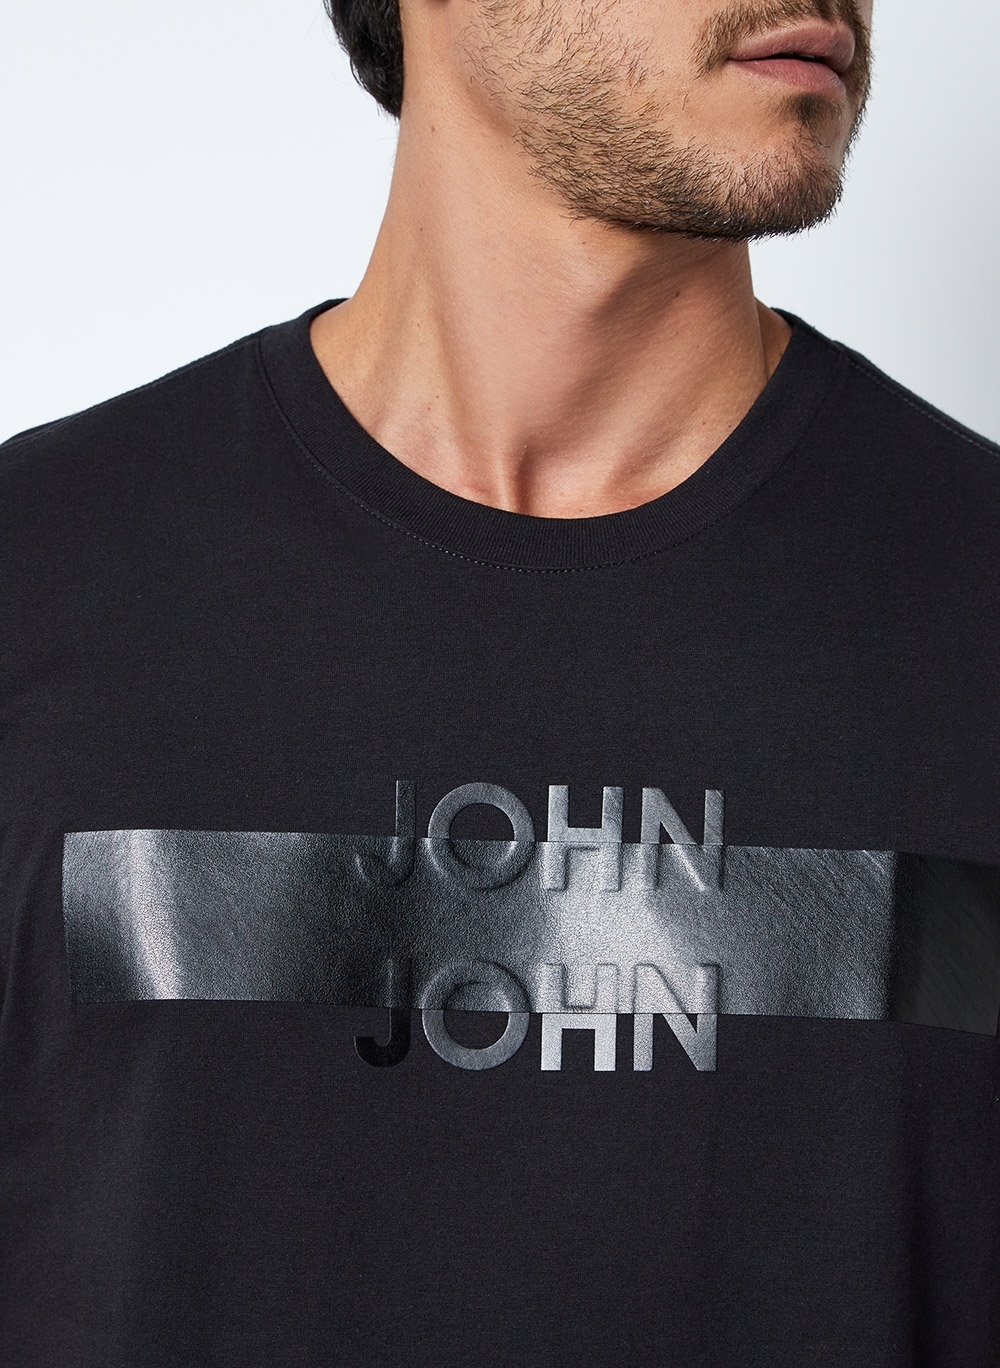 Camiseta John John Estampada Preta Lote com 4 Peças